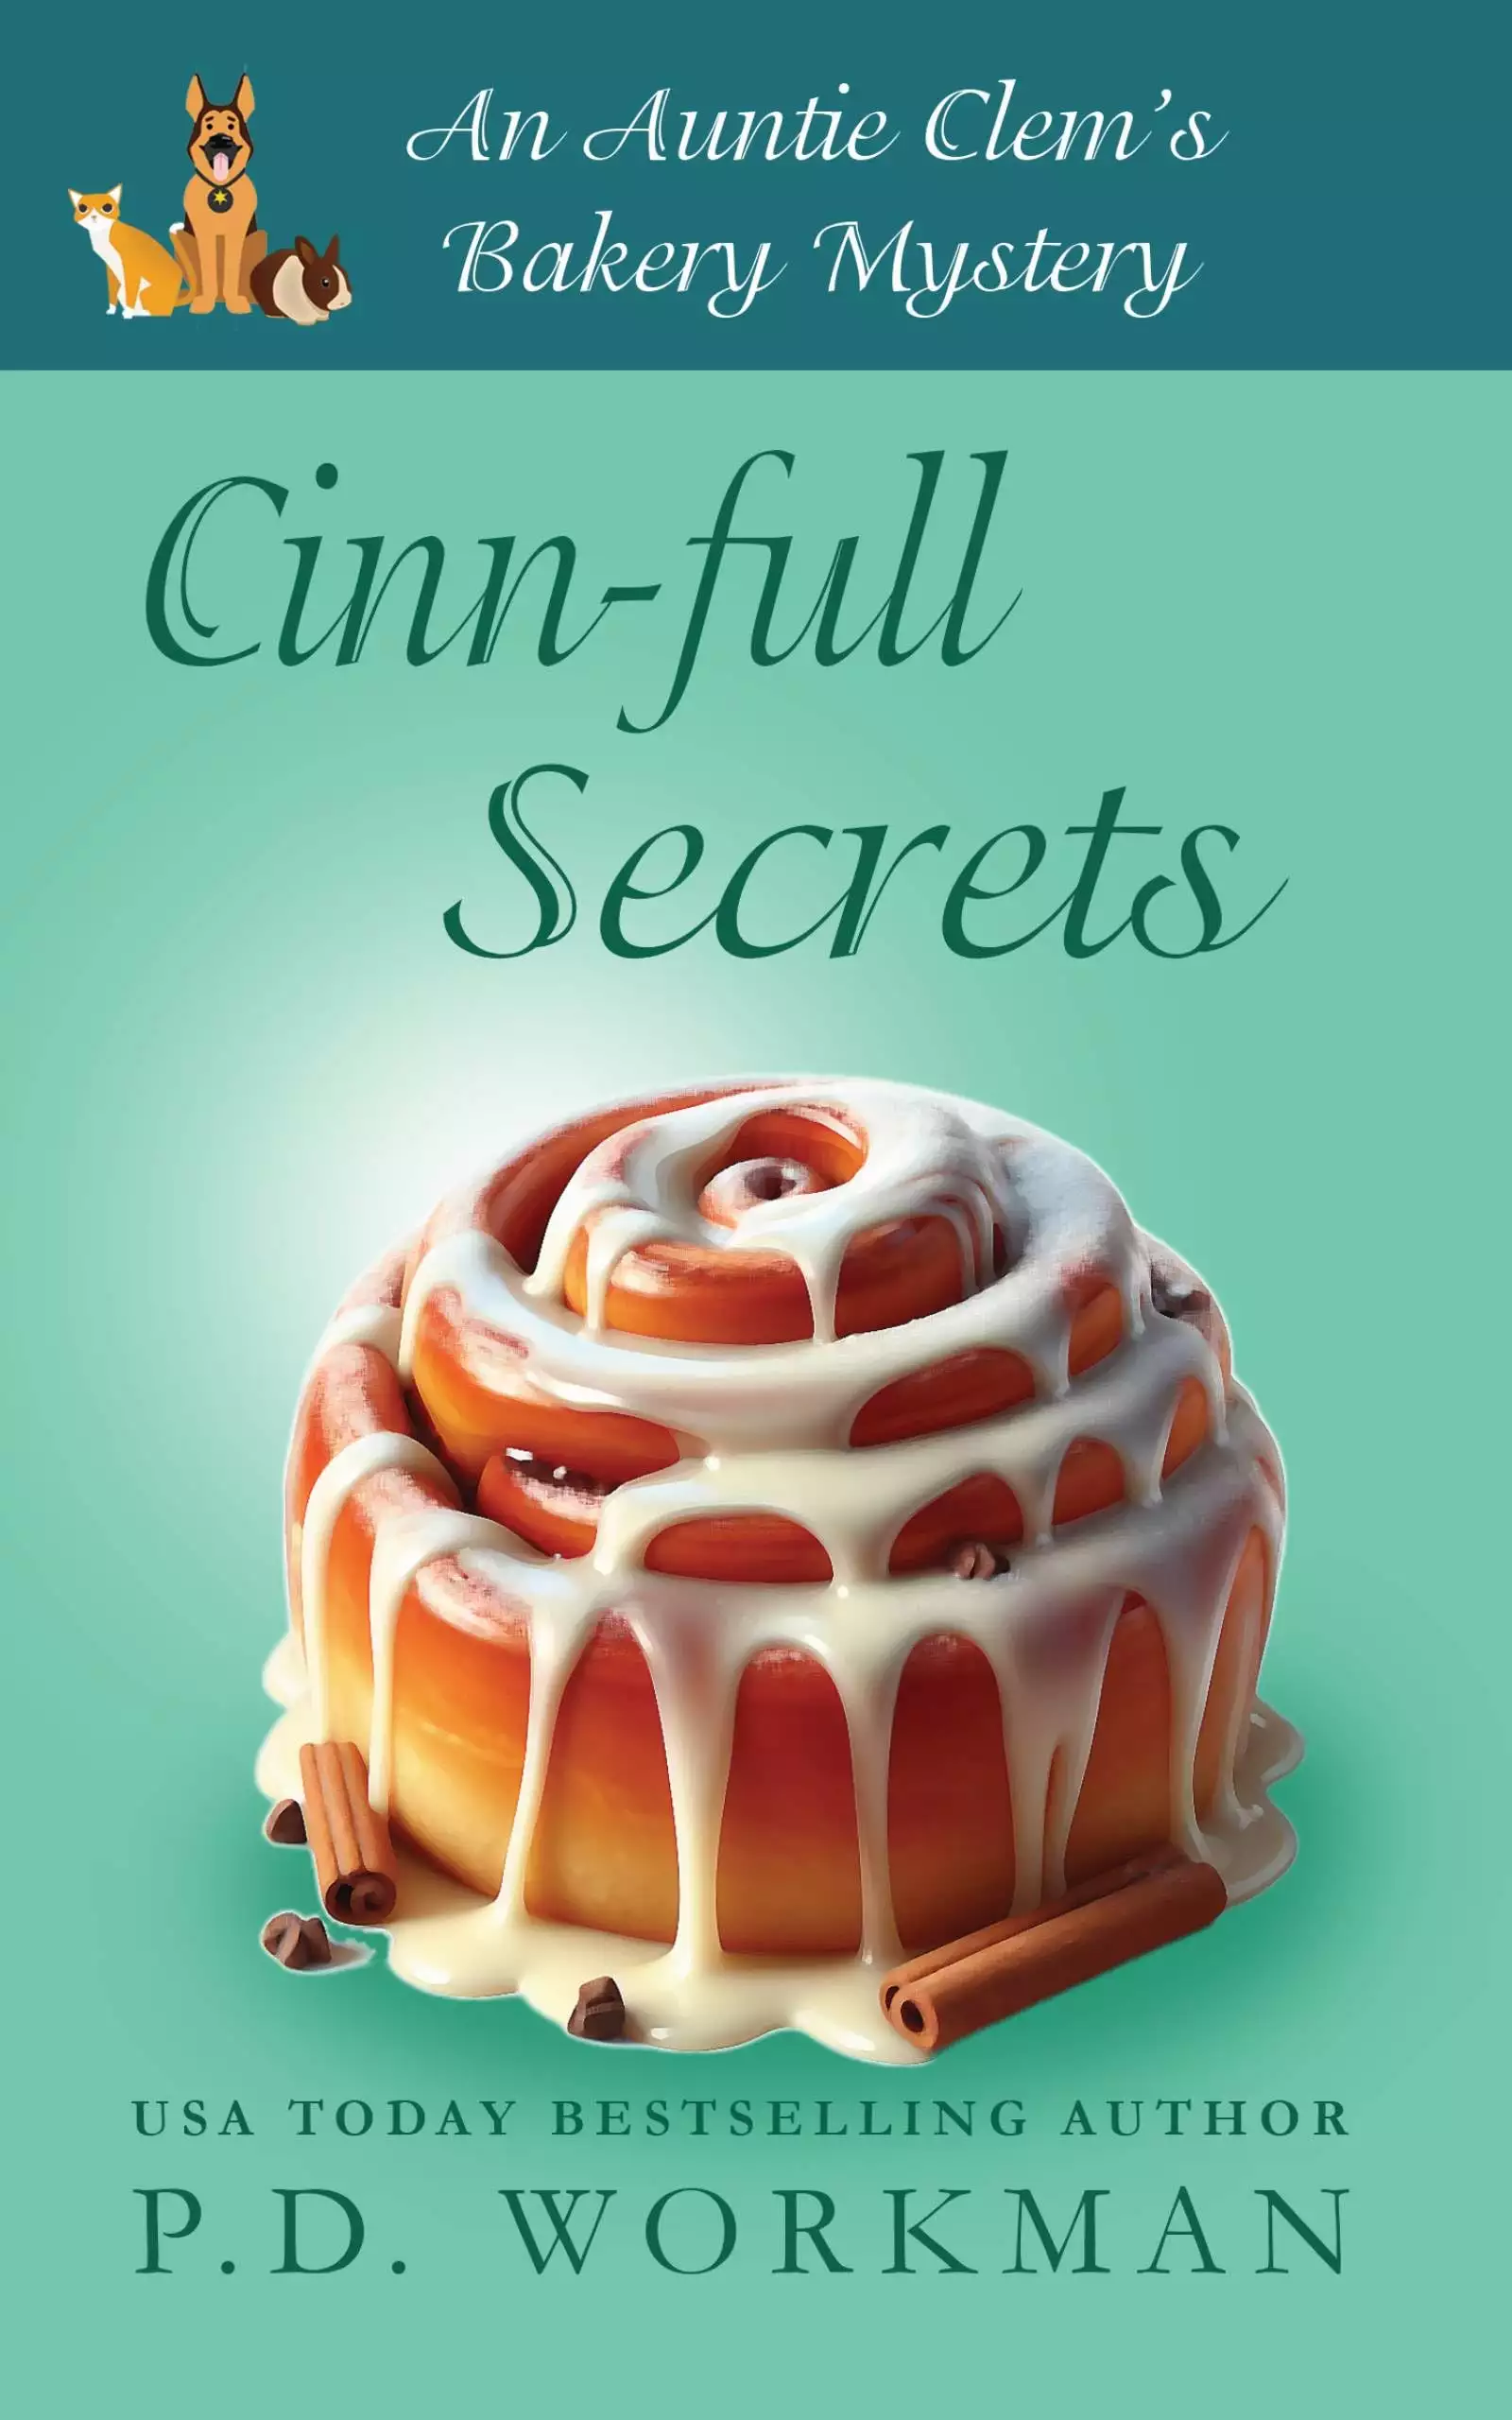 Cinn-full Secrets